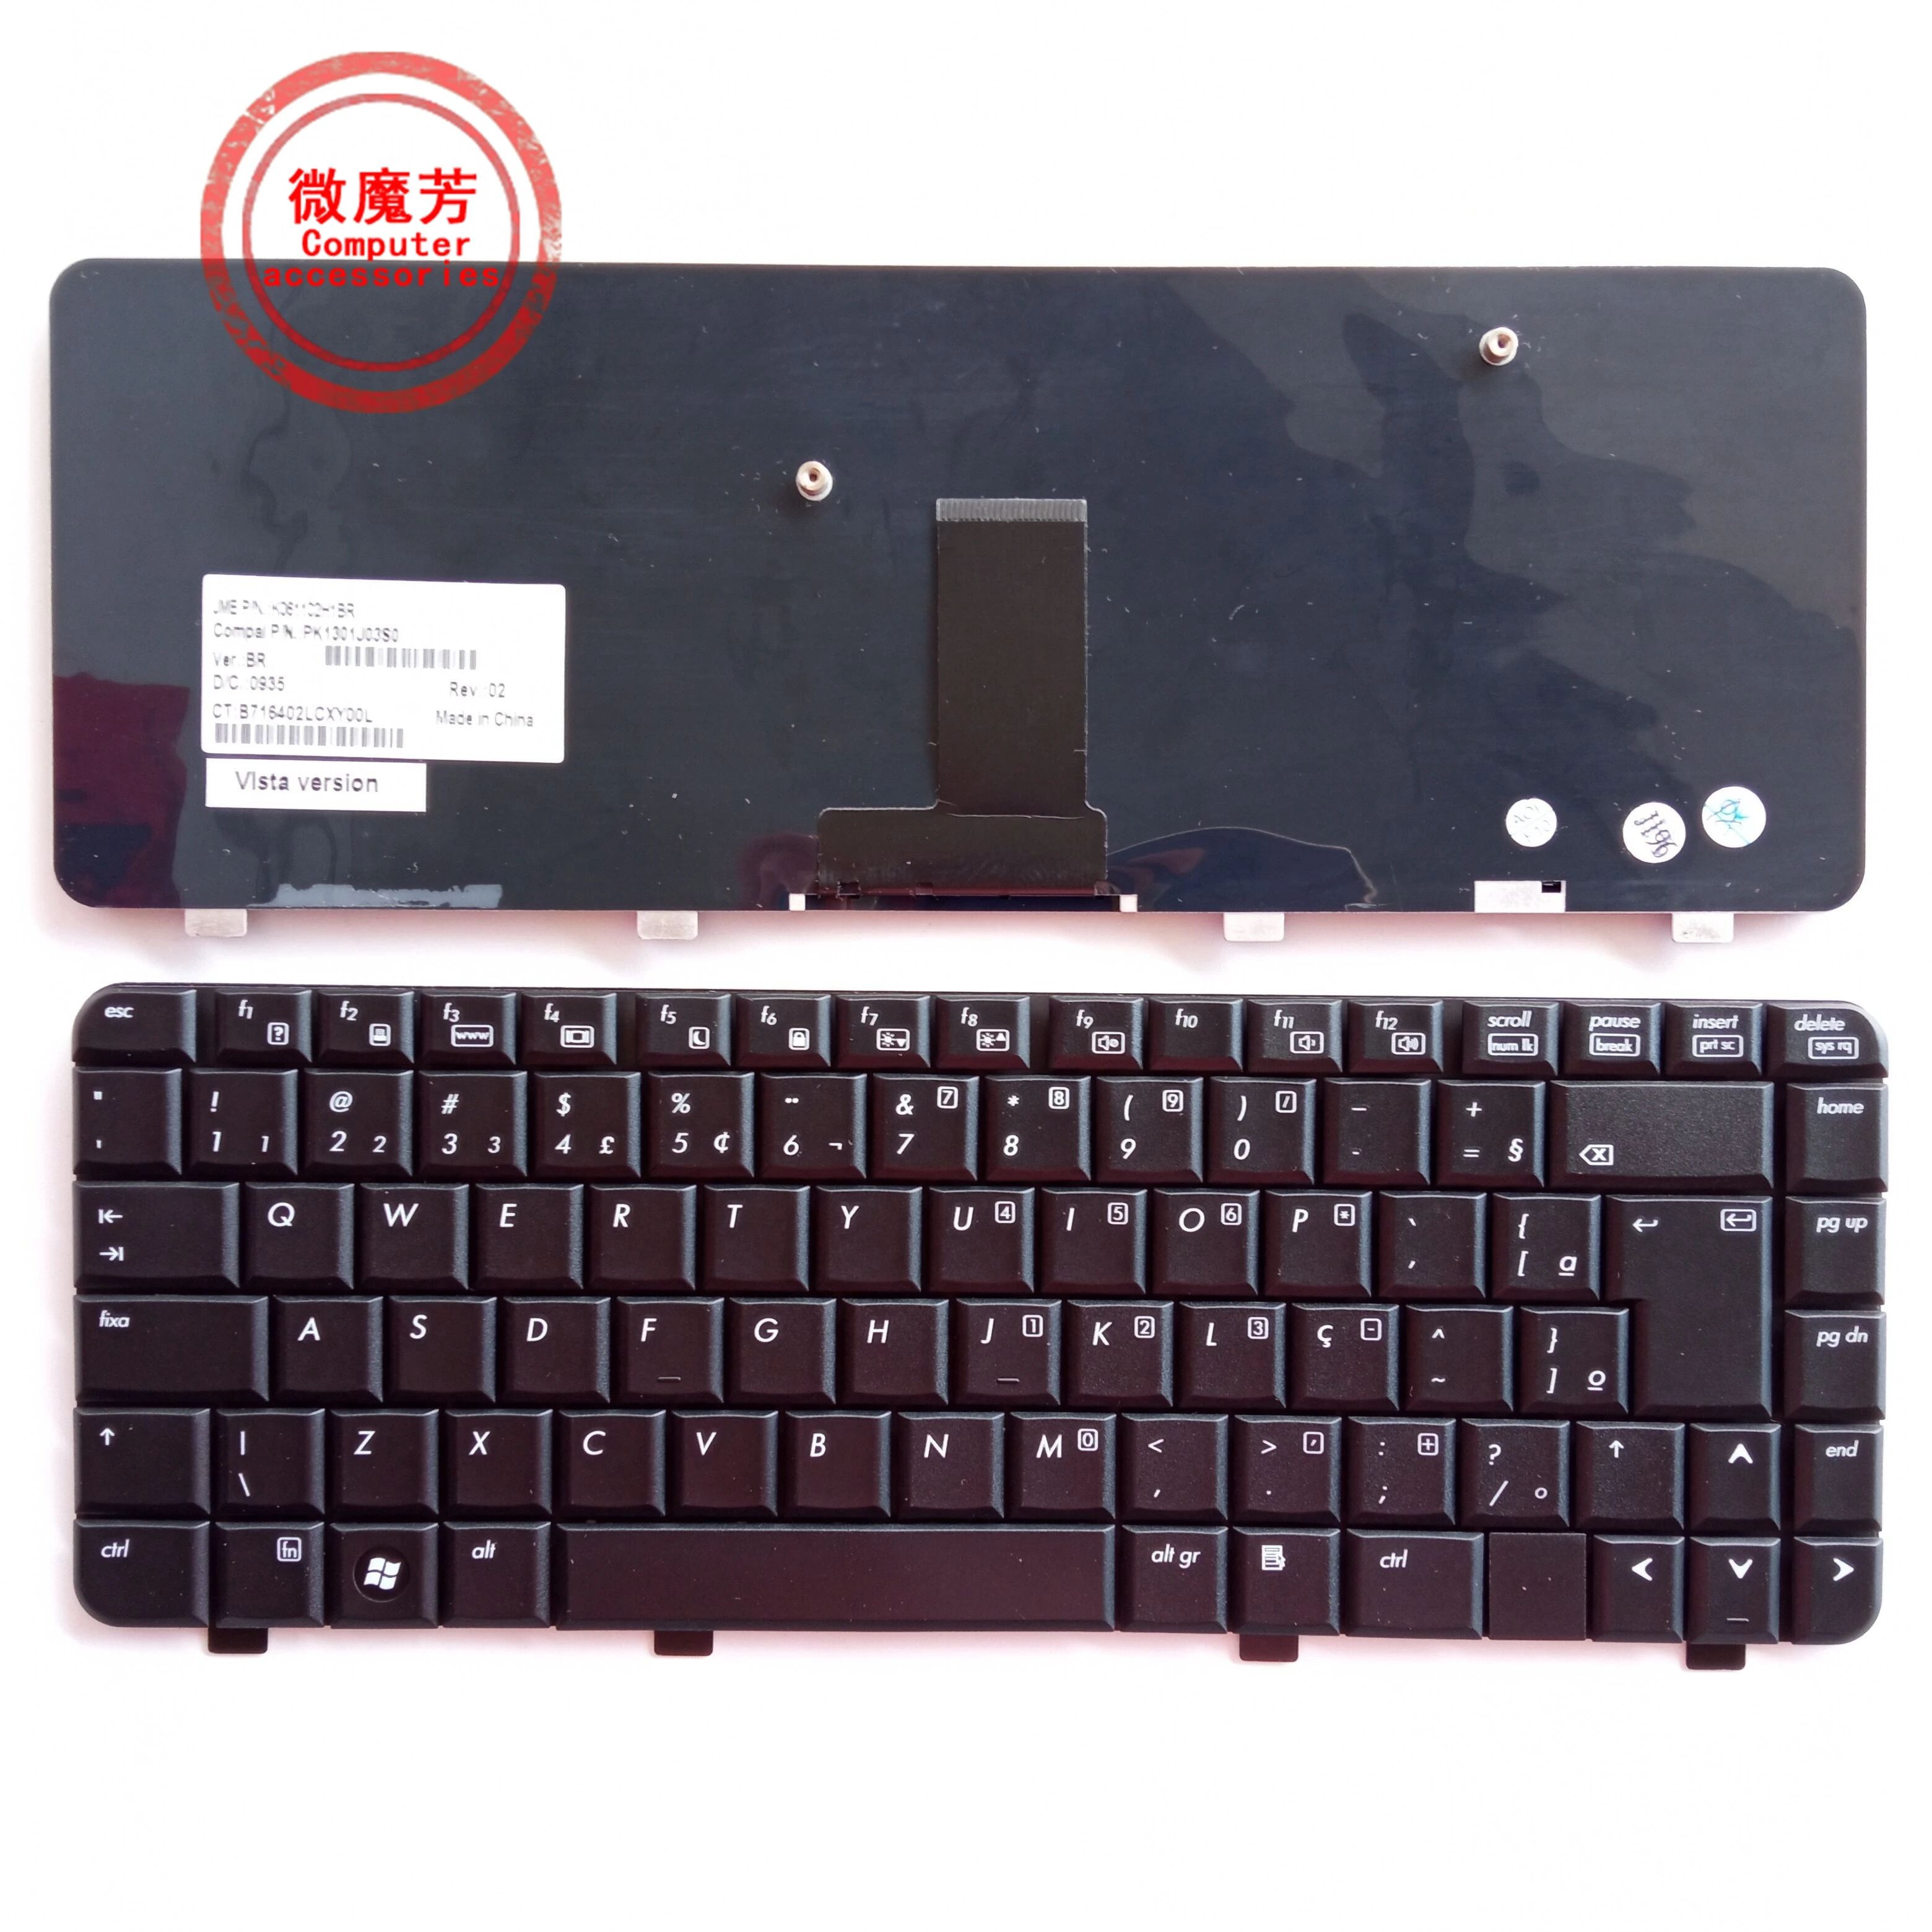 Nouveau clavier d'ordinateur portable BR pour HP 530 hp 530 - AliExpress